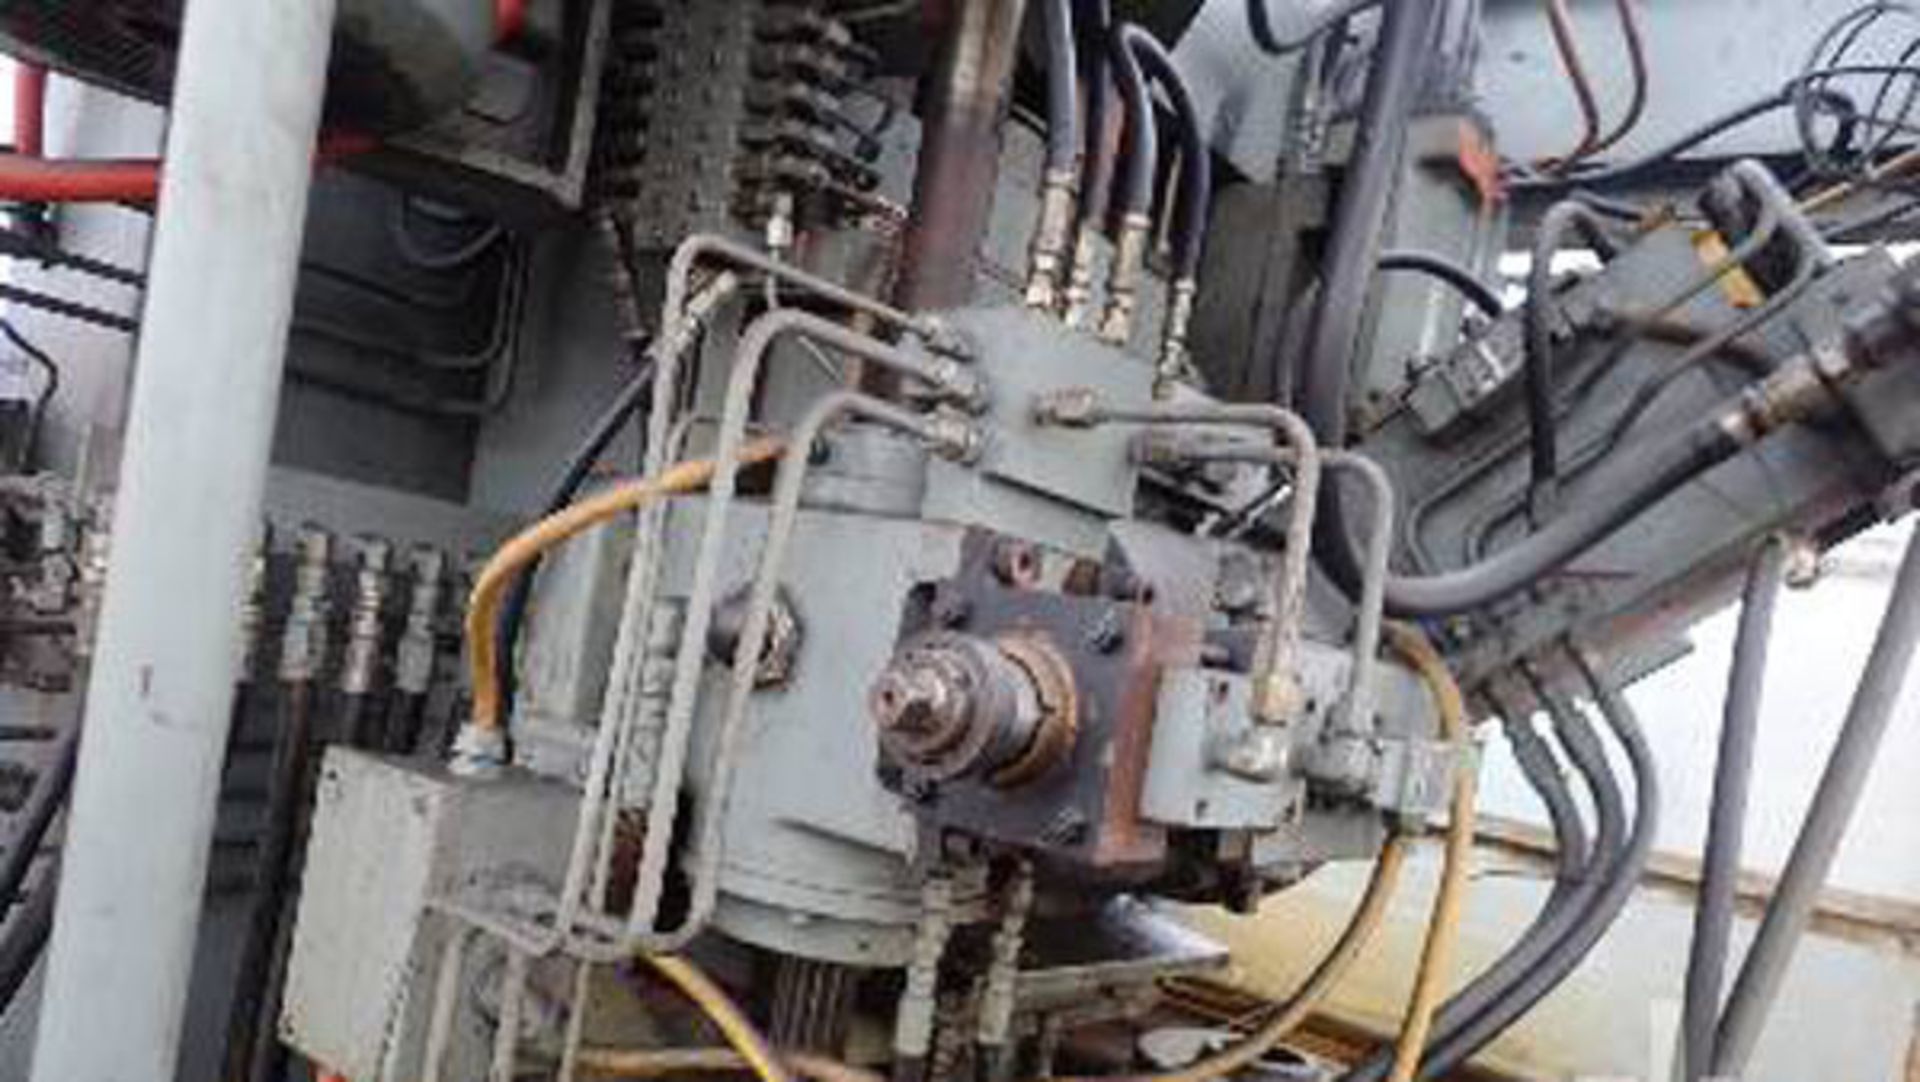 Lees Bradner Vertical Gear Hobb Machine | 8", Mdl: 7VH, S/N: 7VH1836 - Located In: Huntington Park, - Image 6 of 7